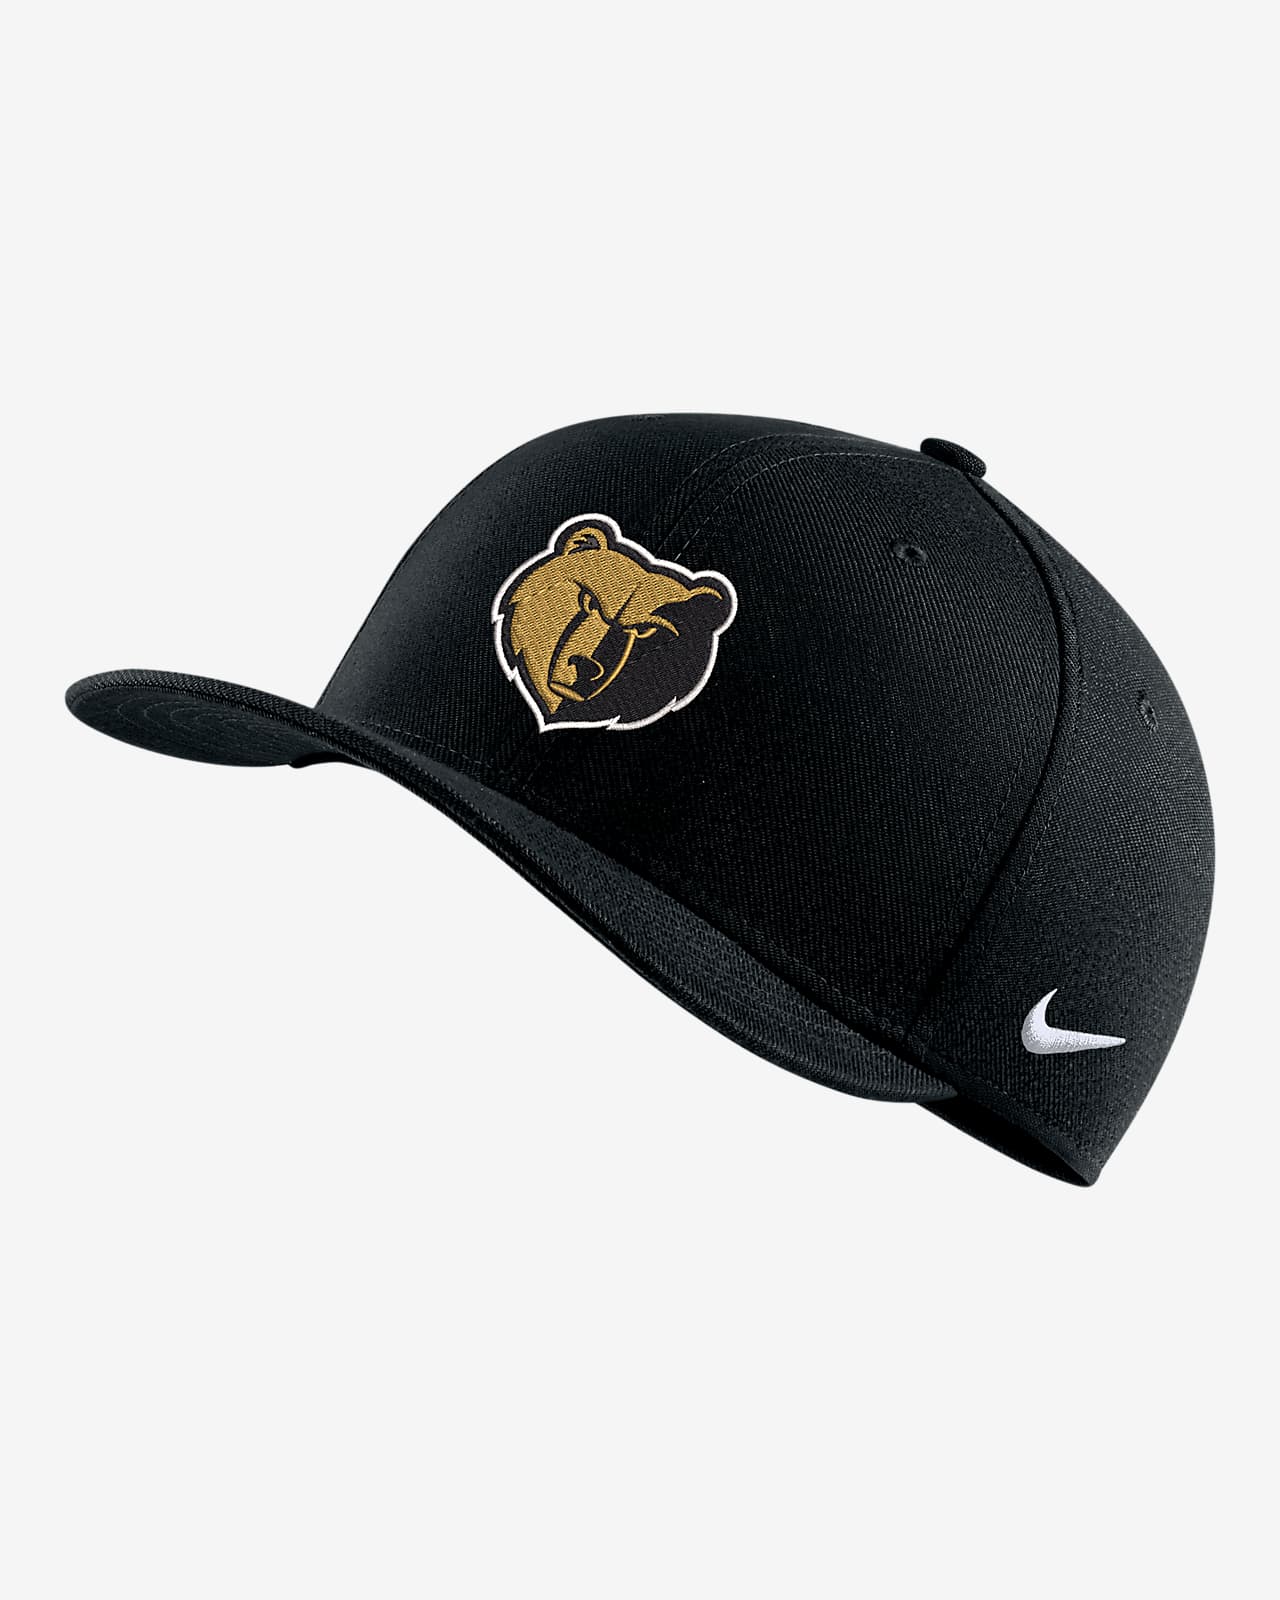 Memphis Grizzlies City Edition Nike NBA Swoosh Flex Cap